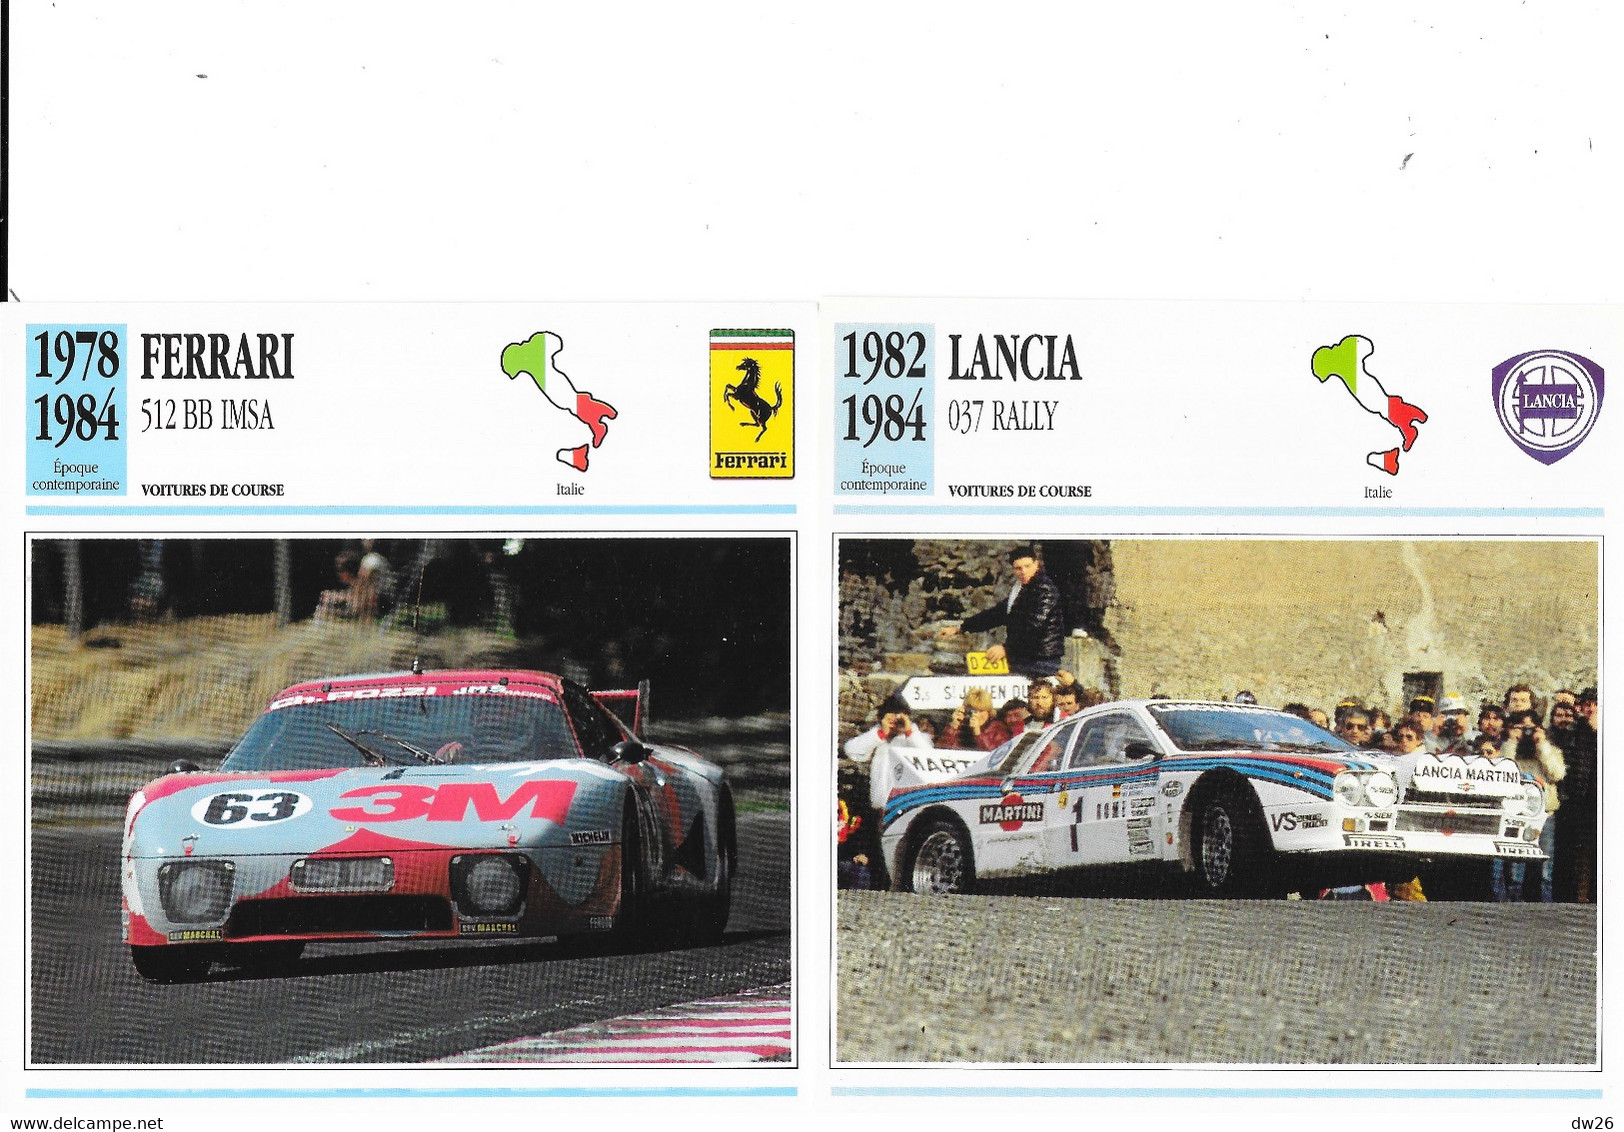 Fiche Voitures de Course: Epoque Contemporaine: Prototype Le Mans, Rally, Sport - Lot de 22 fiches